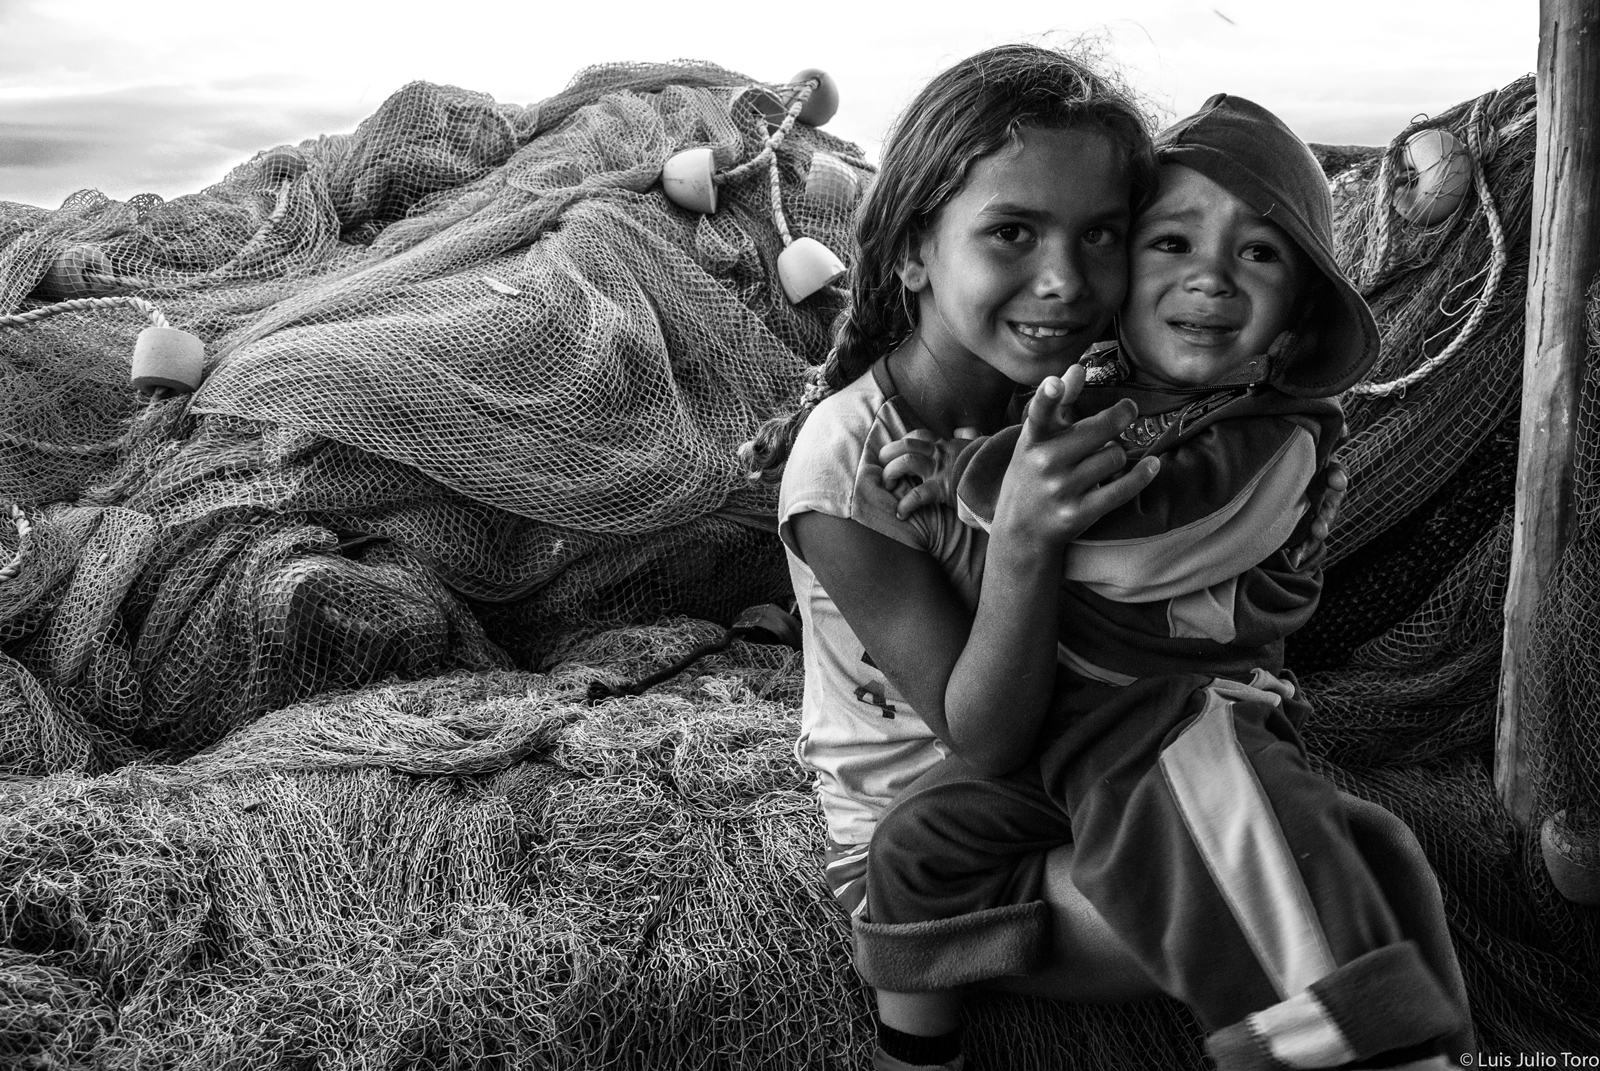 Retrato de niños en un pueblo de pescadores a orillas de la costa del Golfo de Cariaco. Venezuela. Luis J Toro.